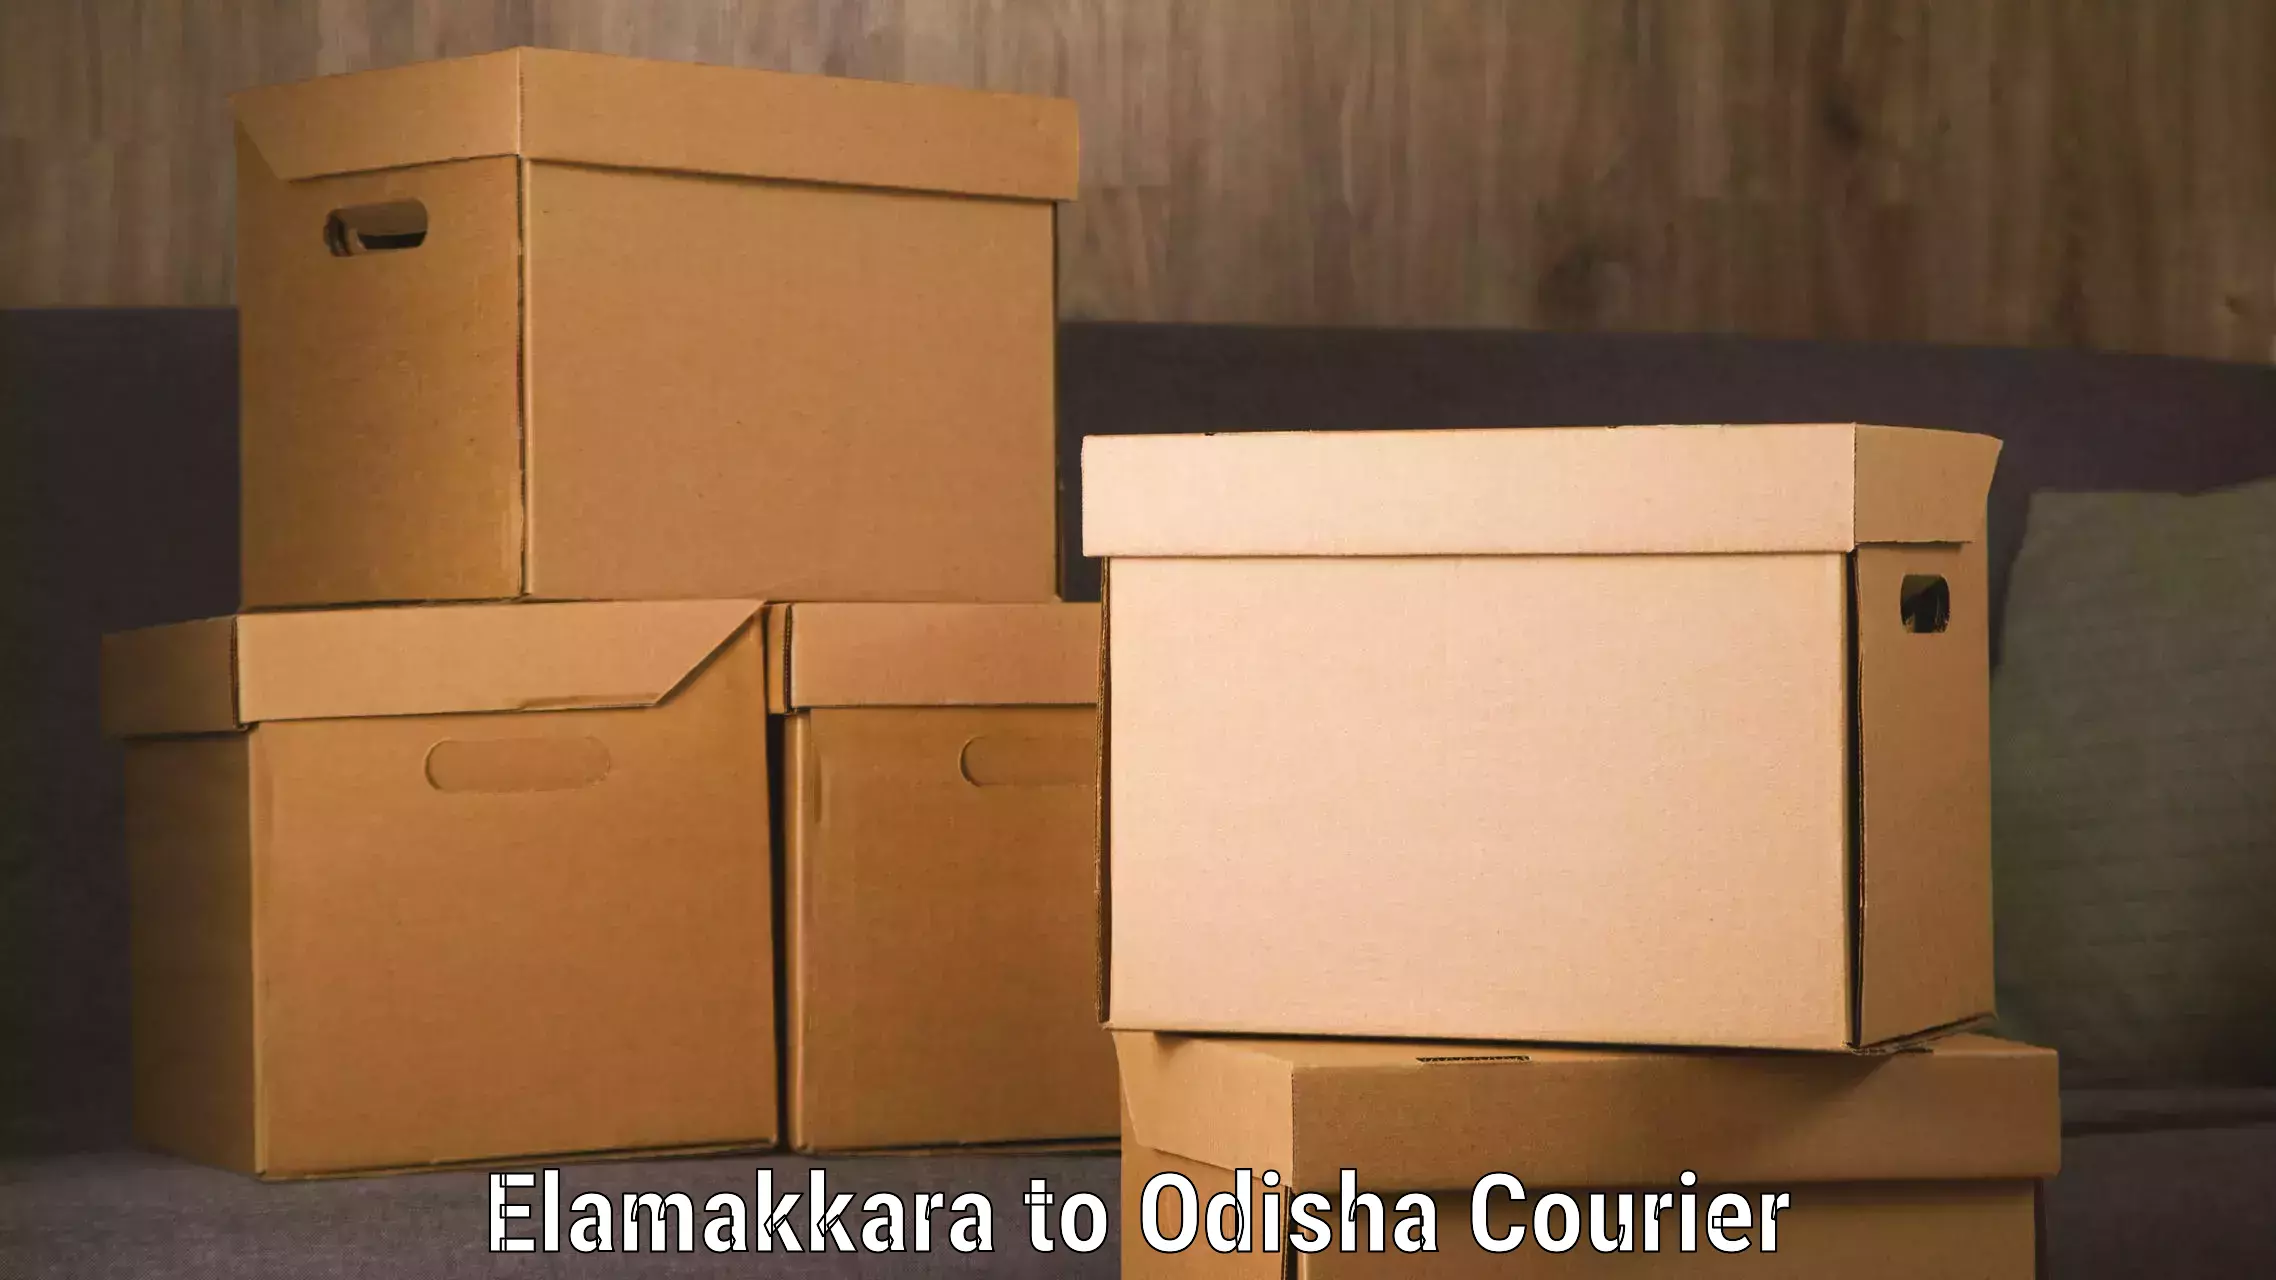 End-to-end delivery Elamakkara to Odisha